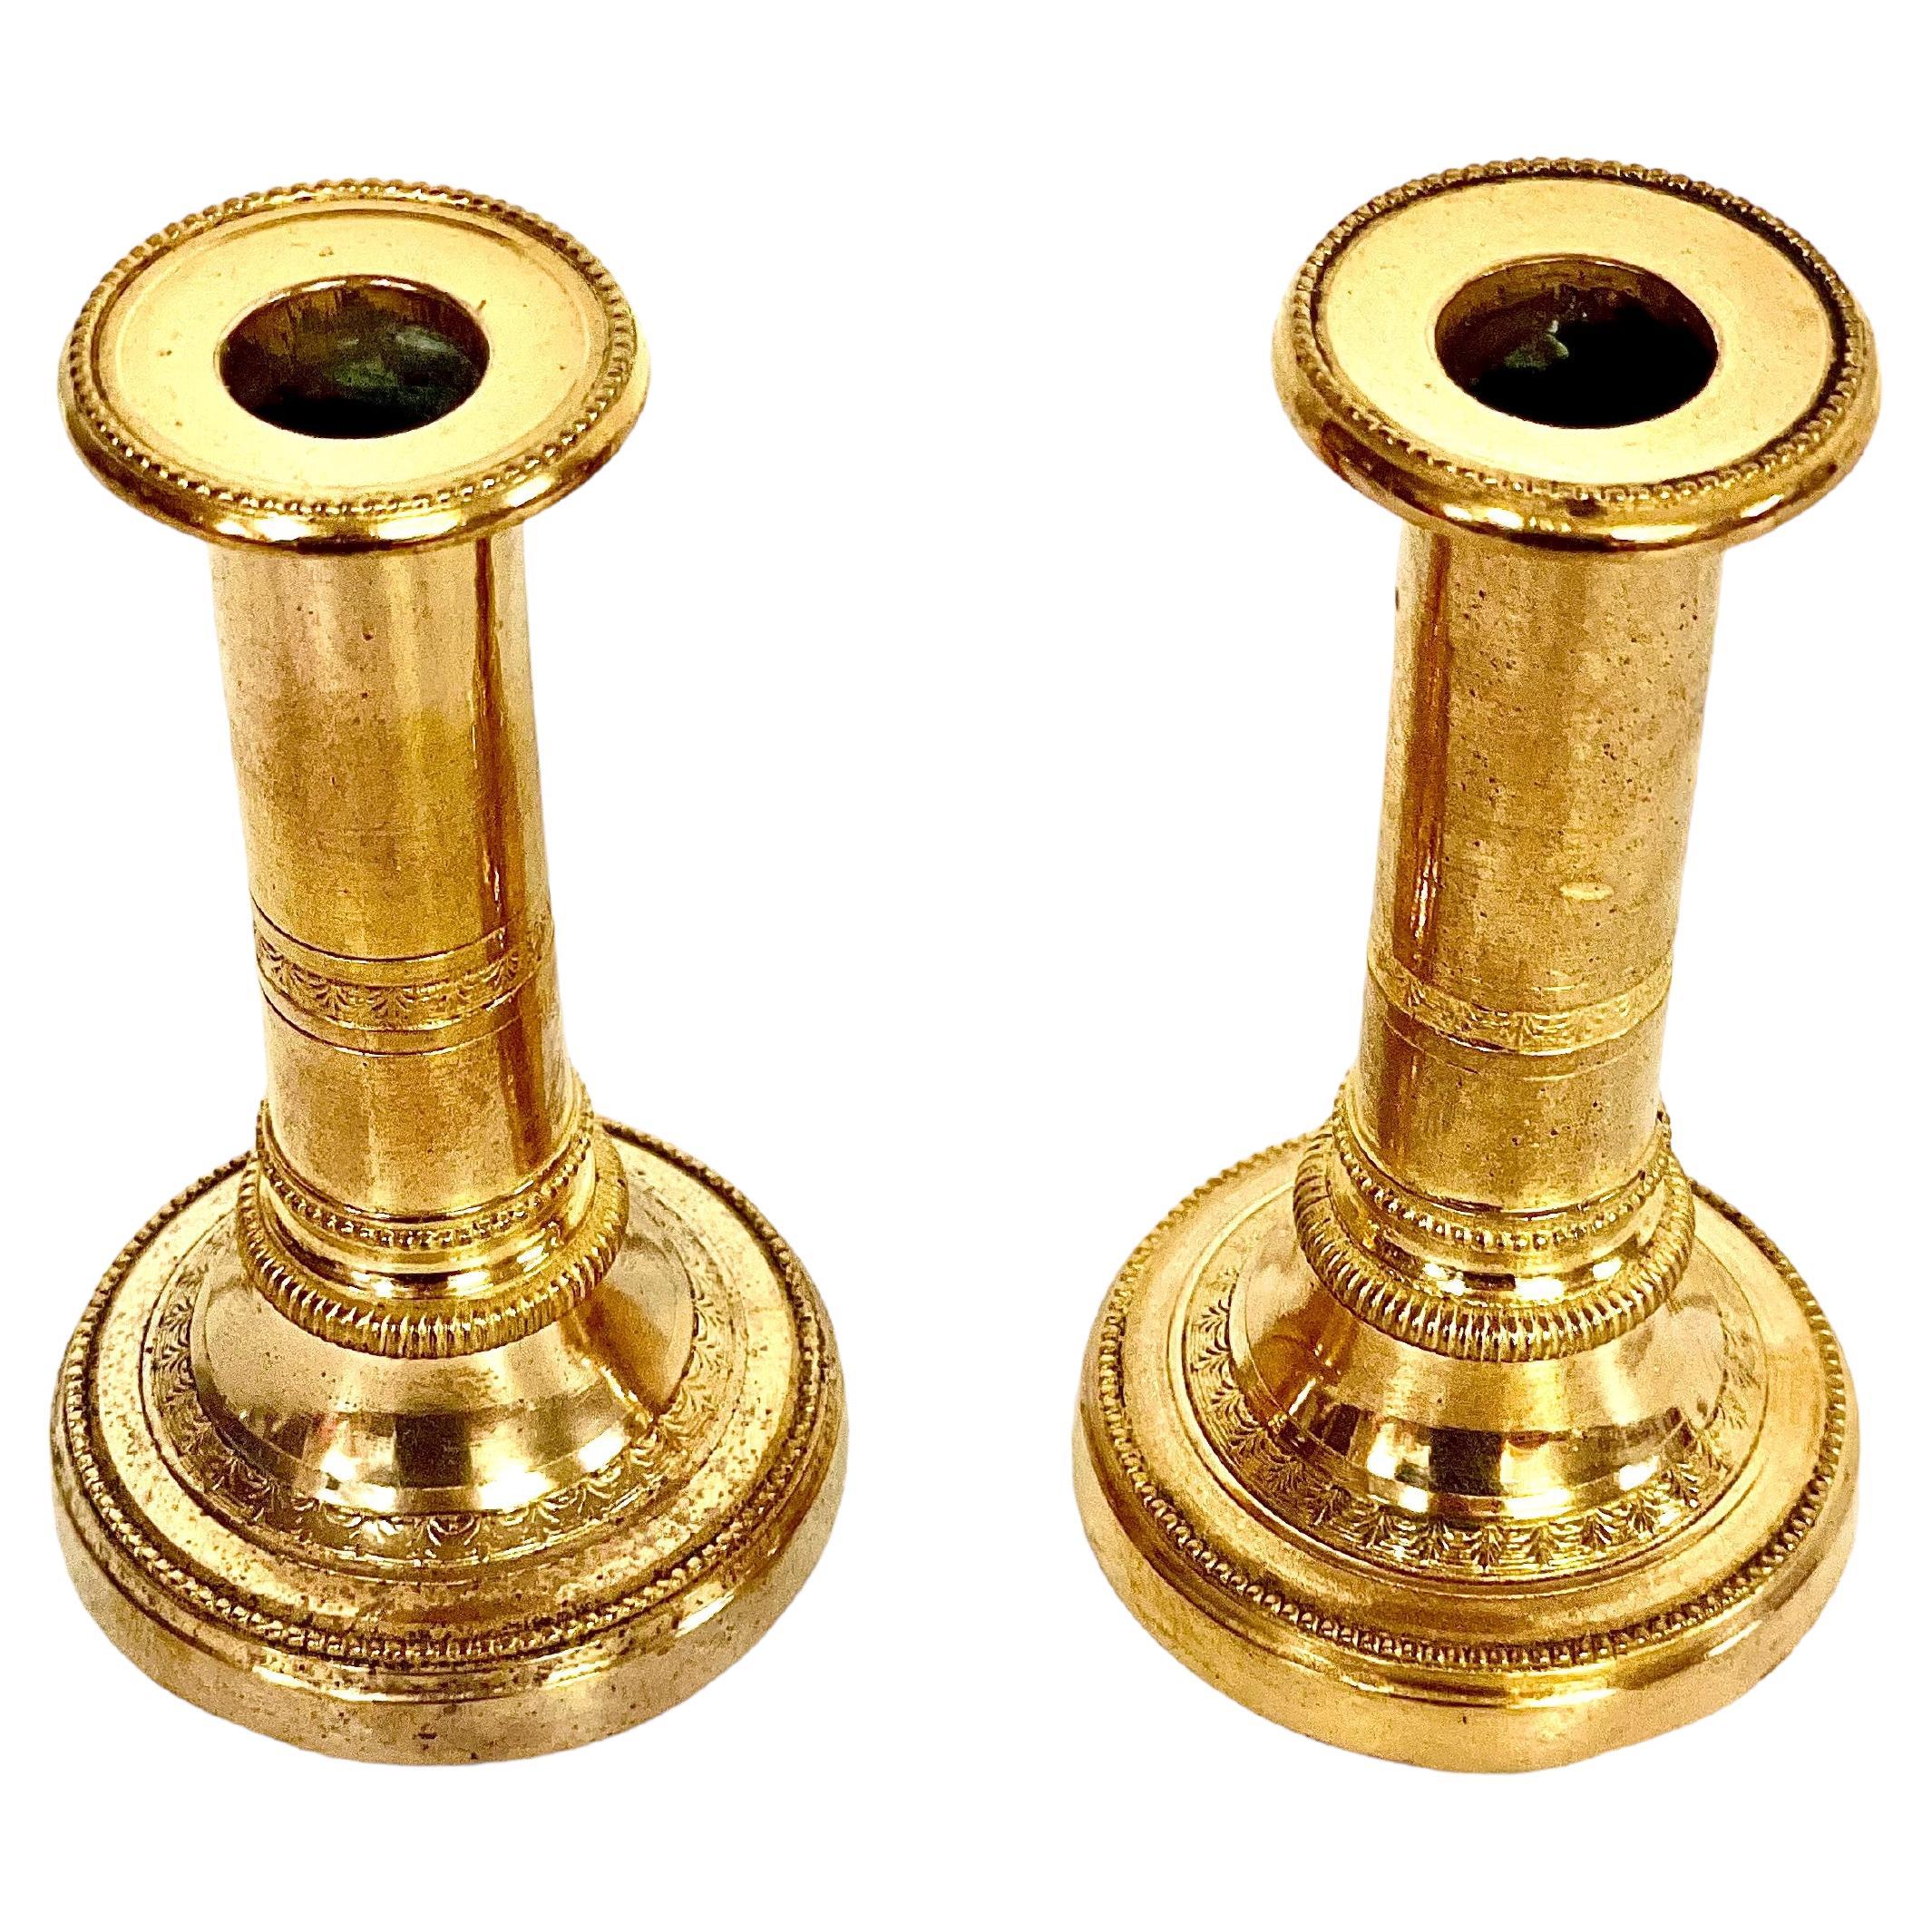  Petite paire de chandeliers en bronze doré. 19ème siècle